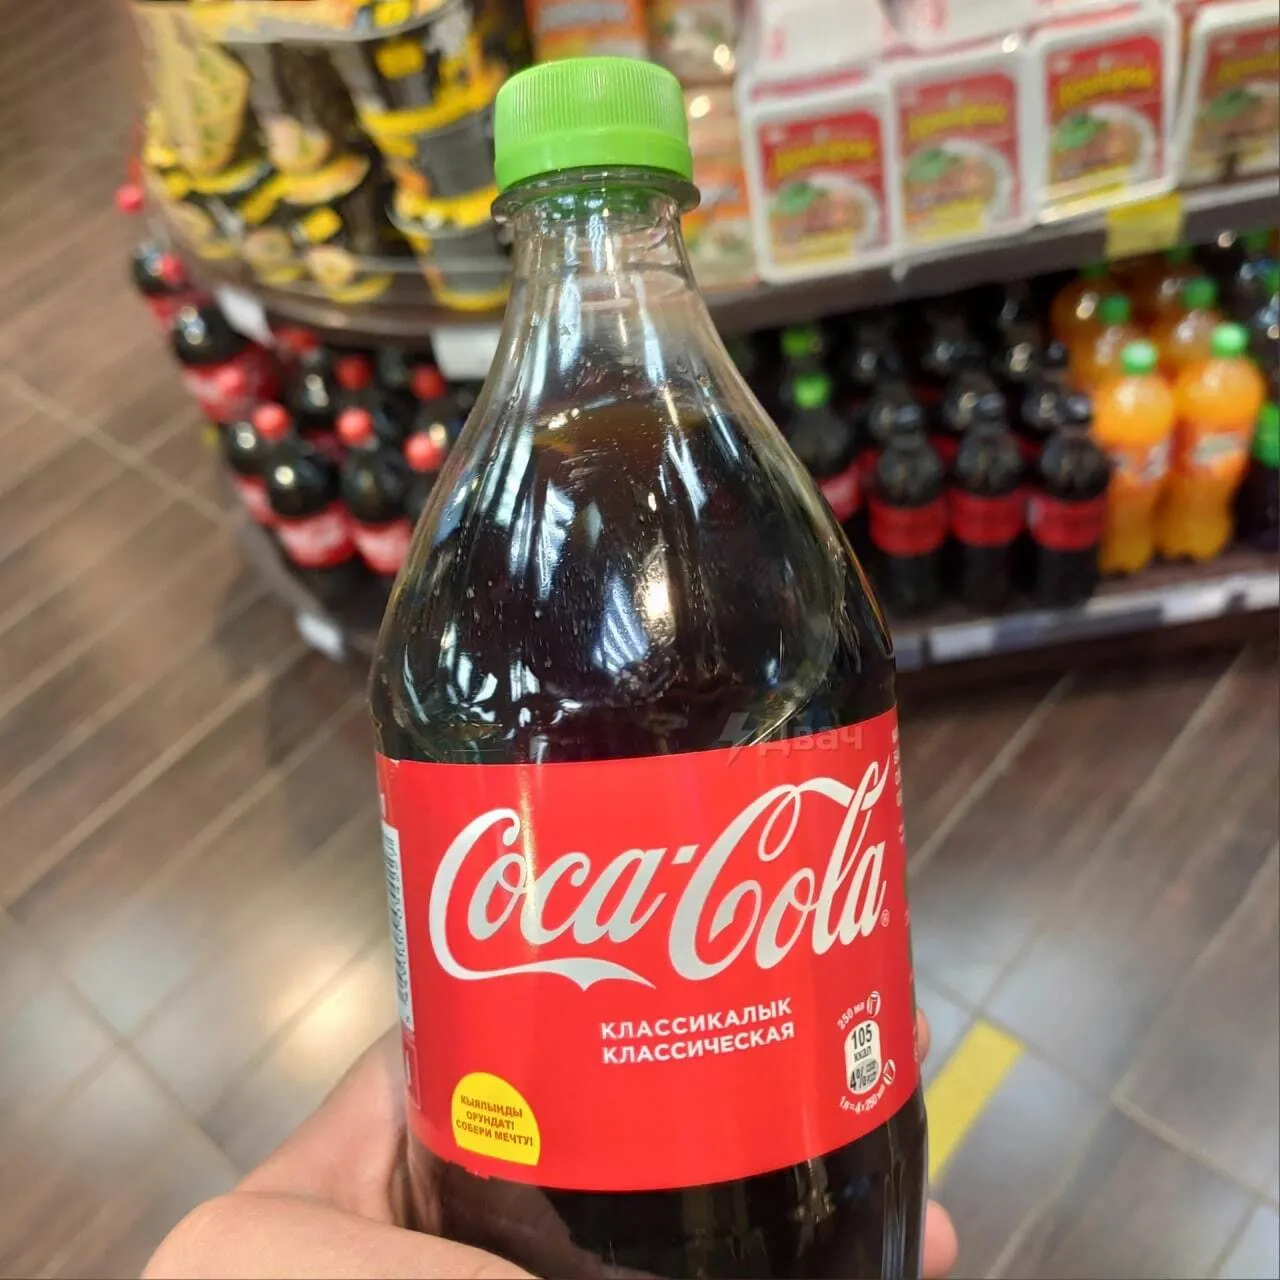      Coca-Cola tdiqrideiuezrz